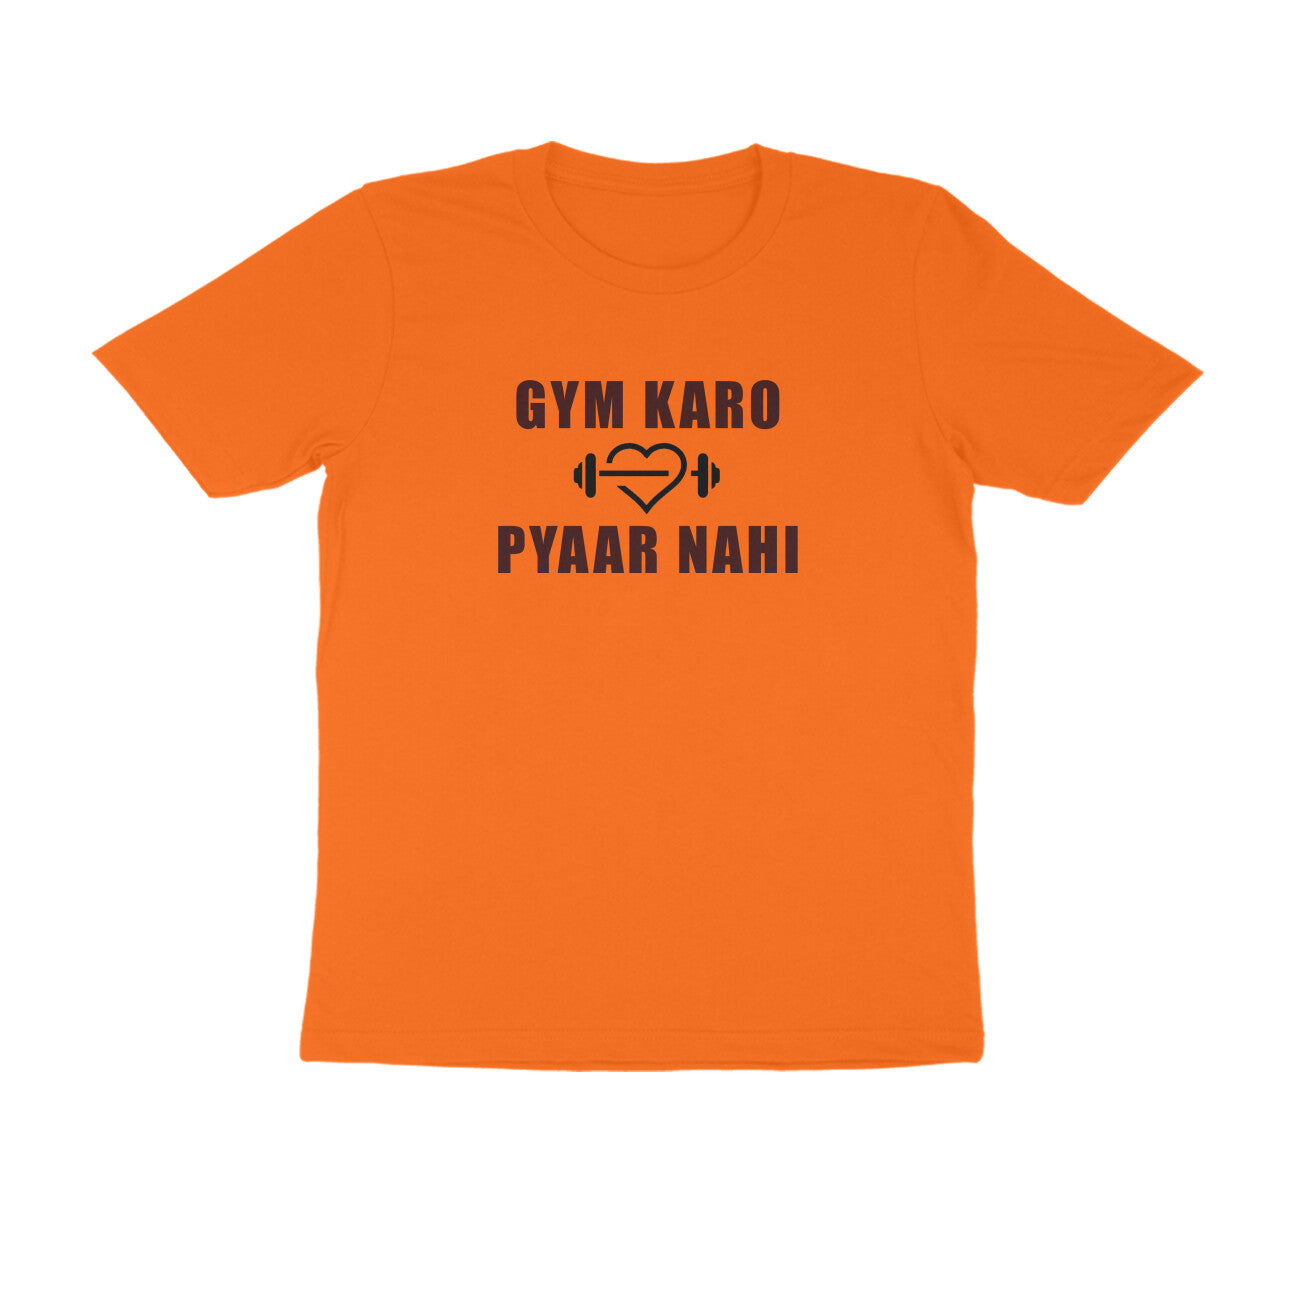 GYM KARO PYAR NAHI Workout T-shirt.